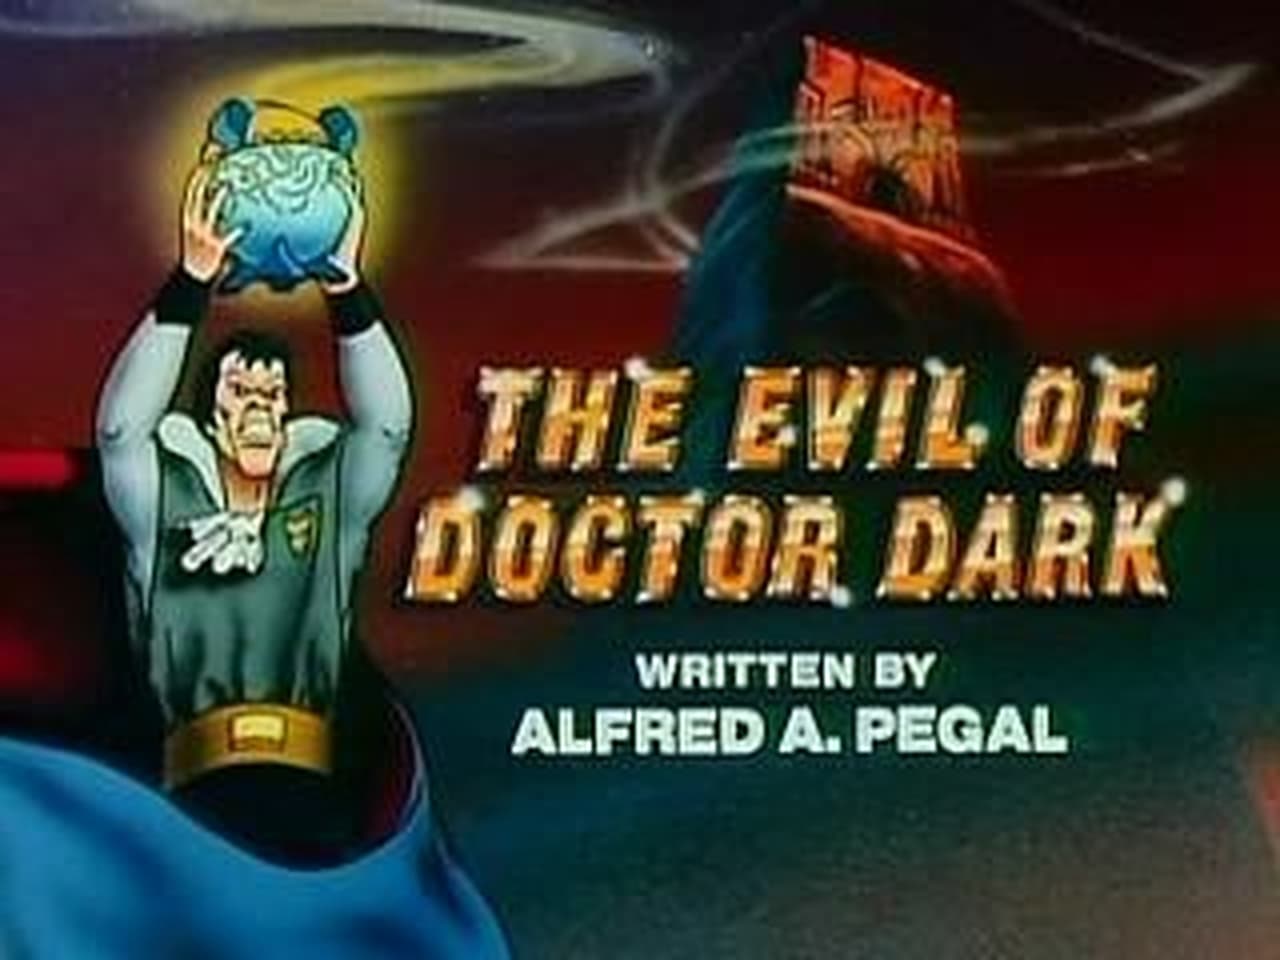 The Evil of Doctor Dark